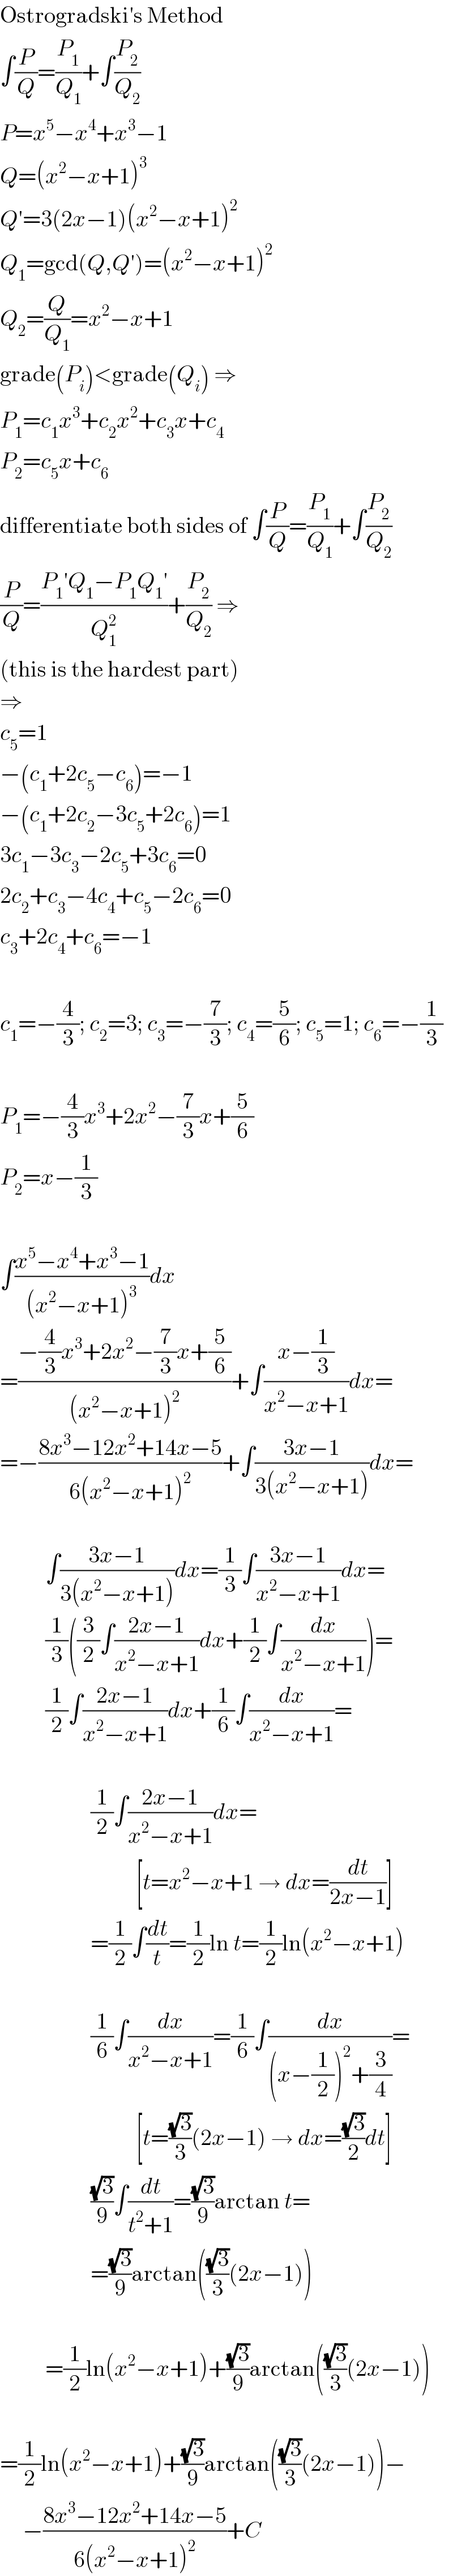 Ostrogradski′s Method  ∫(P/Q)=(P_1 /Q_1 )+∫(P_2 /Q_2 )  P=x^5 −x^4 +x^3 −1  Q=(x^2 −x+1)^3   Q′=3(2x−1)(x^2 −x+1)^2   Q_1 =gcd(Q,Q′)=(x^2 −x+1)^2   Q_2 =(Q/Q_1 )=x^2 −x+1  grade(P_i )<grade(Q_i ) ⇒  P_1 =c_1 x^3 +c_2 x^2 +c_3 x+c_4   P_2 =c_5 x+c_6   differentiate both sides of ∫(P/Q)=(P_1 /Q_1 )+∫(P_2 /Q_2 )  (P/Q)=((P_1 ′Q_1 −P_1 Q_1 ′)/Q_1 ^2 )+(P_2 /Q_2 ) ⇒  (this is the hardest part)  ⇒  c_5 =1  −(c_1 +2c_5 −c_6 )=−1  −(c_1 +2c_2 −3c_5 +2c_6 )=1  3c_1 −3c_3 −2c_5 +3c_6 =0  2c_2 +c_3 −4c_4 +c_5 −2c_6 =0  c_3 +2c_4 +c_6 =−1    c_1 =−(4/3); c_2 =3; c_3 =−(7/3); c_4 =(5/6); c_5 =1; c_6 =−(1/3)    P_1 =−(4/3)x^3 +2x^2 −(7/3)x+(5/6)  P_2 =x−(1/3)    ∫((x^5 −x^4 +x^3 −1)/((x^2 −x+1)^3 ))dx  =((−(4/3)x^3 +2x^2 −(7/3)x+(5/6))/((x^2 −x+1)^2 ))+∫((x−(1/3))/(x^2 −x+1))dx=  =−((8x^3 −12x^2 +14x−5)/(6(x^2 −x+1)^2 ))+∫((3x−1)/(3(x^2 −x+1)))dx=              ∫((3x−1)/(3(x^2 −x+1)))dx=(1/3)∫((3x−1)/(x^2 −x+1))dx=            (1/3)((3/2)∫((2x−1)/(x^2 −x+1))dx+(1/2)∫(dx/(x^2 −x+1)))=            (1/2)∫((2x−1)/(x^2 −x+1))dx+(1/6)∫(dx/(x^2 −x+1))=                        (1/2)∫((2x−1)/(x^2 −x+1))dx=                                [t=x^2 −x+1 → dx=(dt/(2x−1))]                      =(1/2)∫(dt/t)=(1/2)ln t=(1/2)ln(x^2 −x+1)                        (1/6)∫(dx/(x^2 −x+1))=(1/6)∫(dx/((x−(1/2))^2 +(3/4)))=                                [t=((√3)/3)(2x−1) → dx=((√3)/2)dt]                      ((√3)/9)∫(dt/(t^2 +1))=((√3)/9)arctan t=                      =((√3)/9)arctan(((√3)/3)(2x−1))              =(1/2)ln(x^2 −x+1)+((√3)/9)arctan(((√3)/3)(2x−1))    =(1/2)ln(x^2 −x+1)+((√3)/9)arctan(((√3)/3)(2x−1))−       −((8x^3 −12x^2 +14x−5)/(6(x^2 −x+1)^2 ))+C  